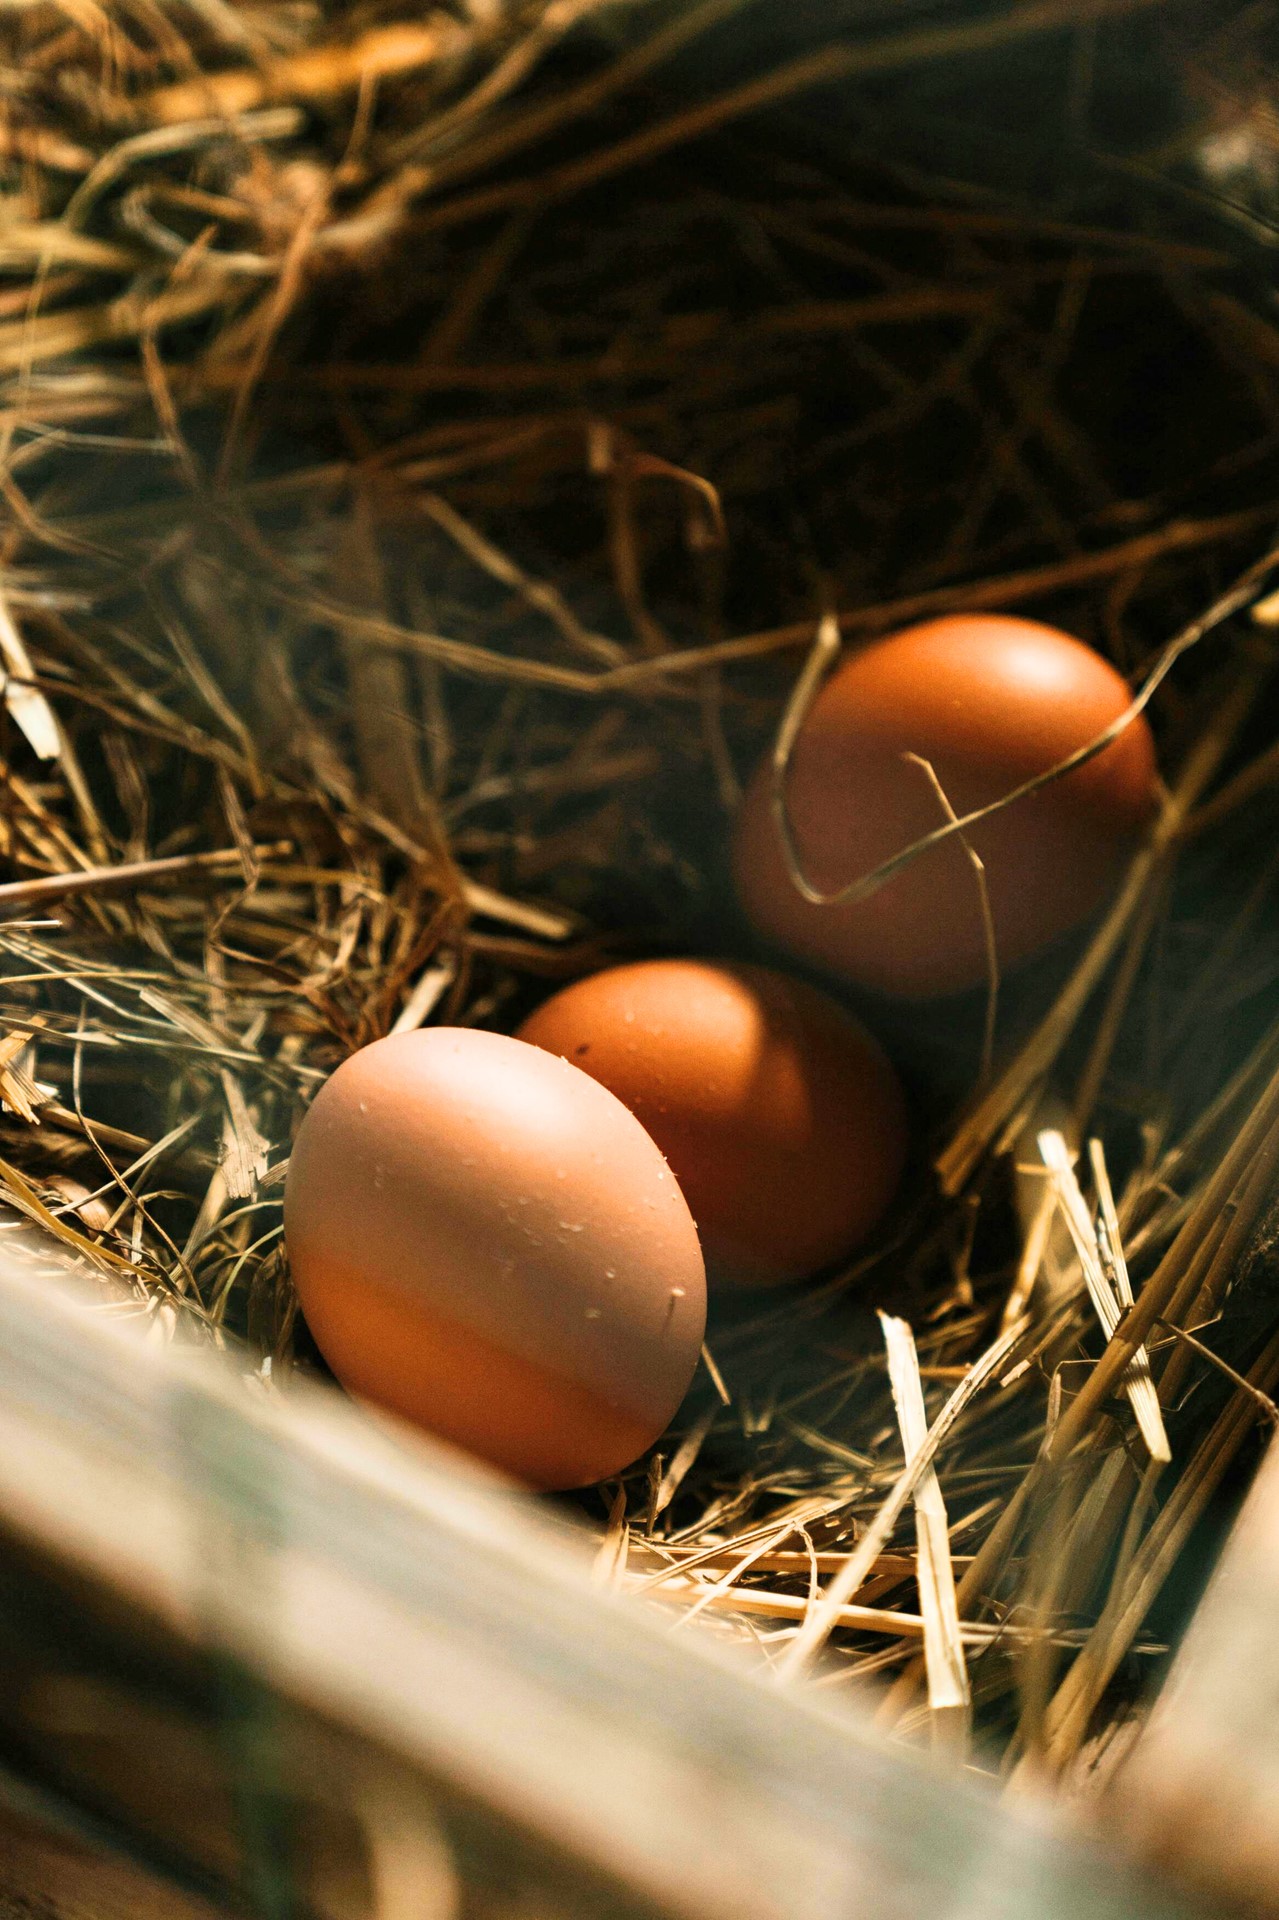 Eieren van hobbykippen bevat PFAS